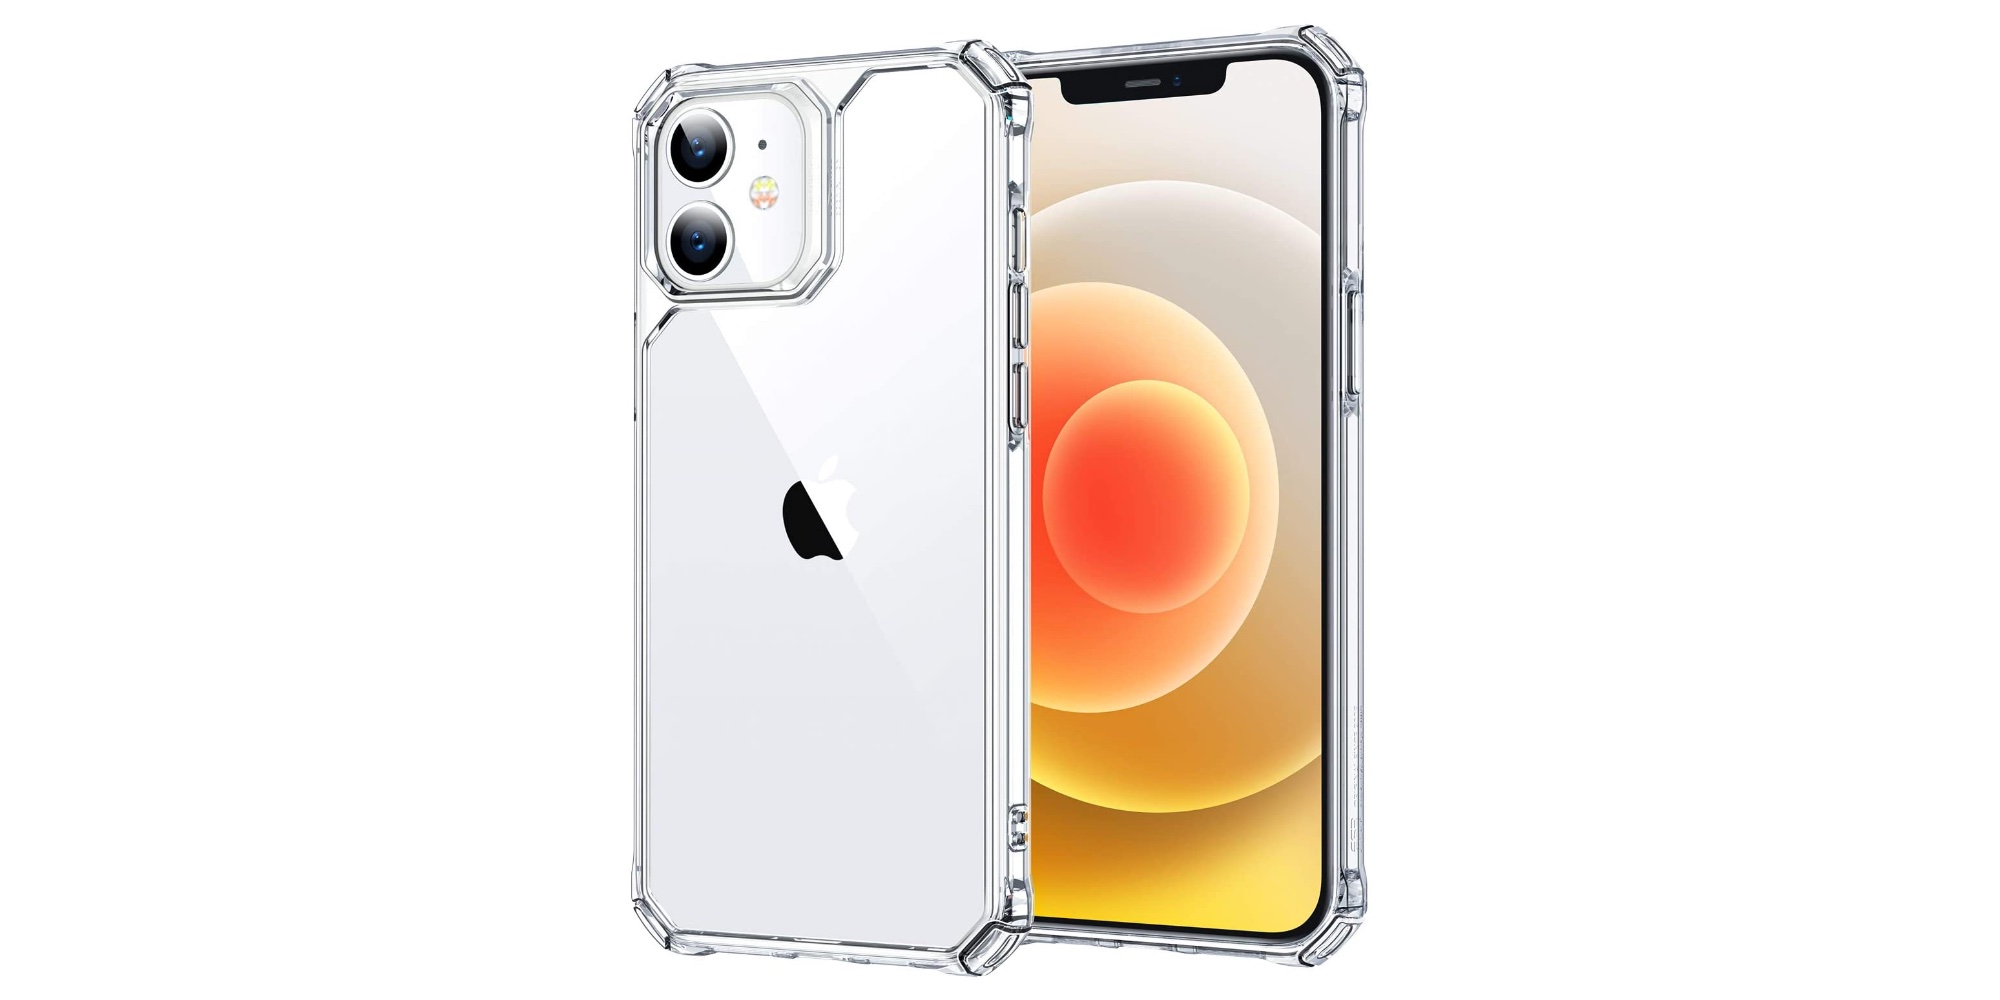 Smartphone Accessories: ESR iPhone 12 mini Clear Case $5 (Save 61%), more